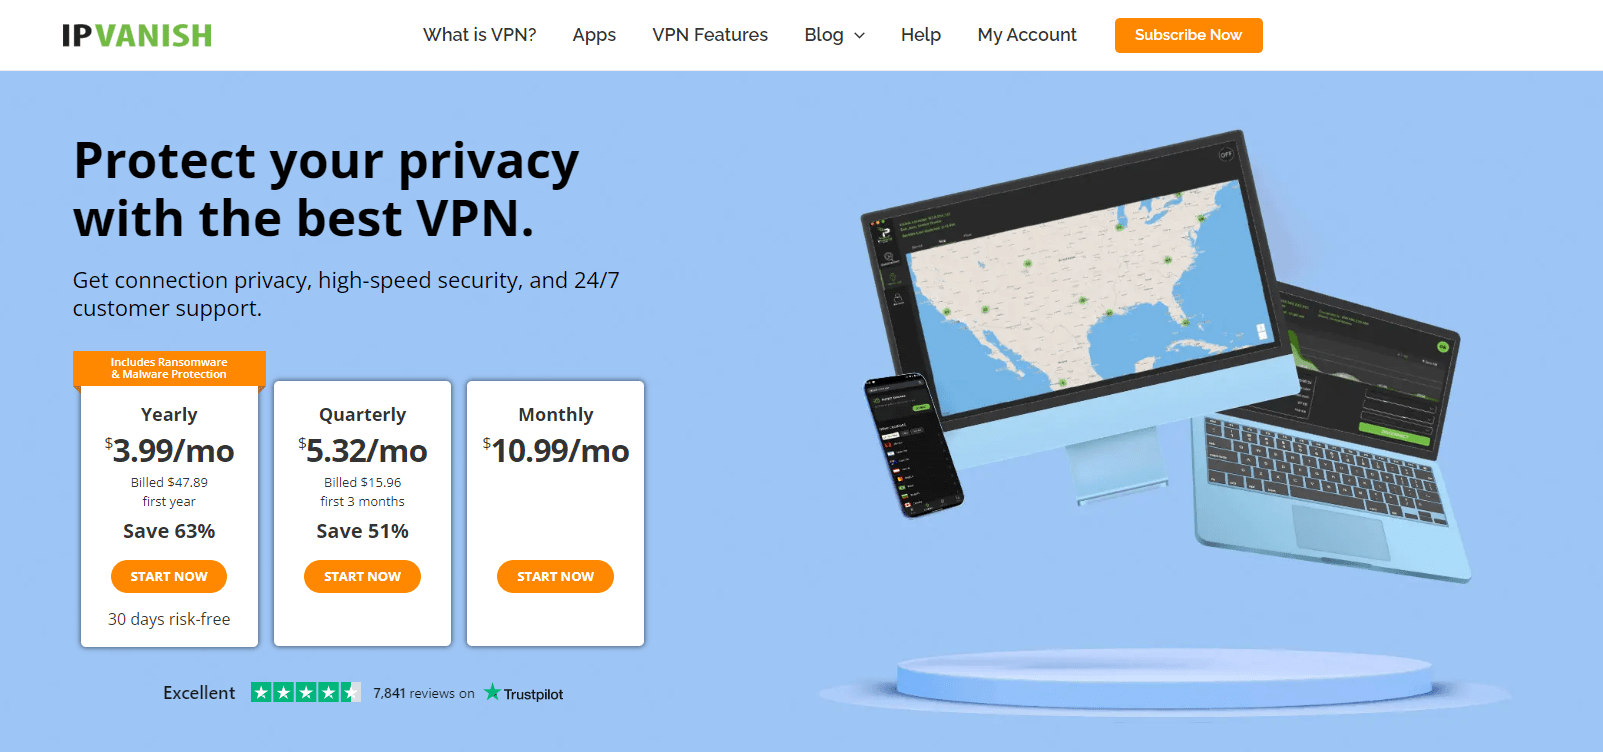 IPVanish VPN - Best VPN Services